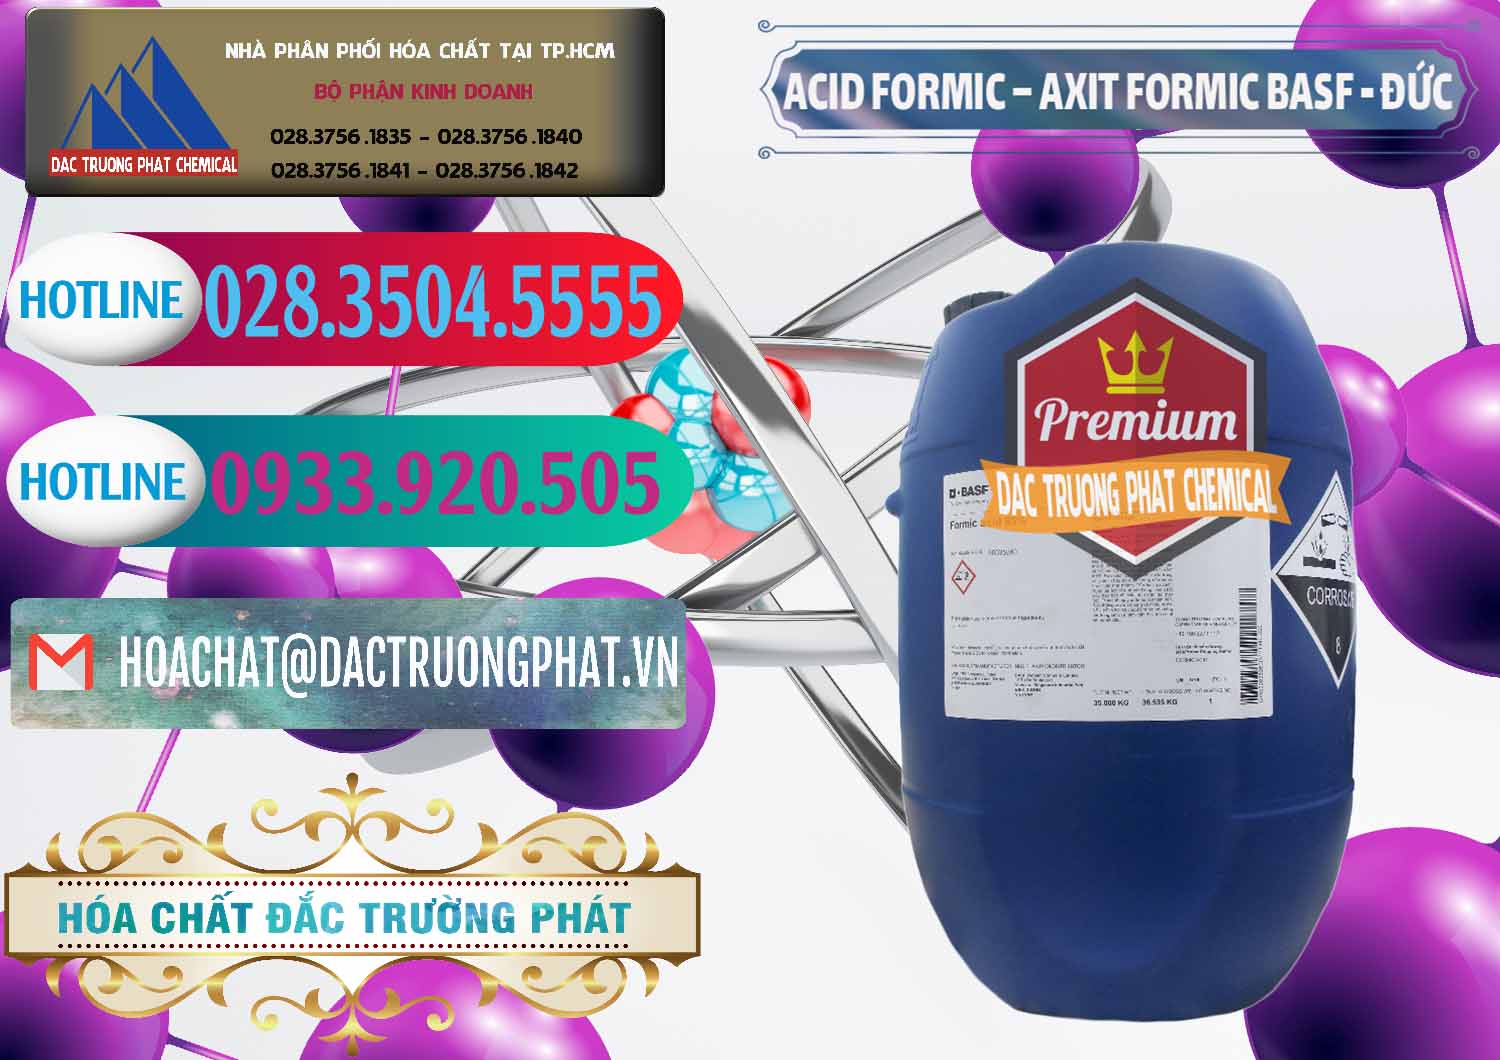 Nơi chuyên bán & cung cấp Acid Formic - Axit Formic BASF Đức Germany - 0028 - Nhà phân phối & cung cấp hóa chất tại TP.HCM - truongphat.vn